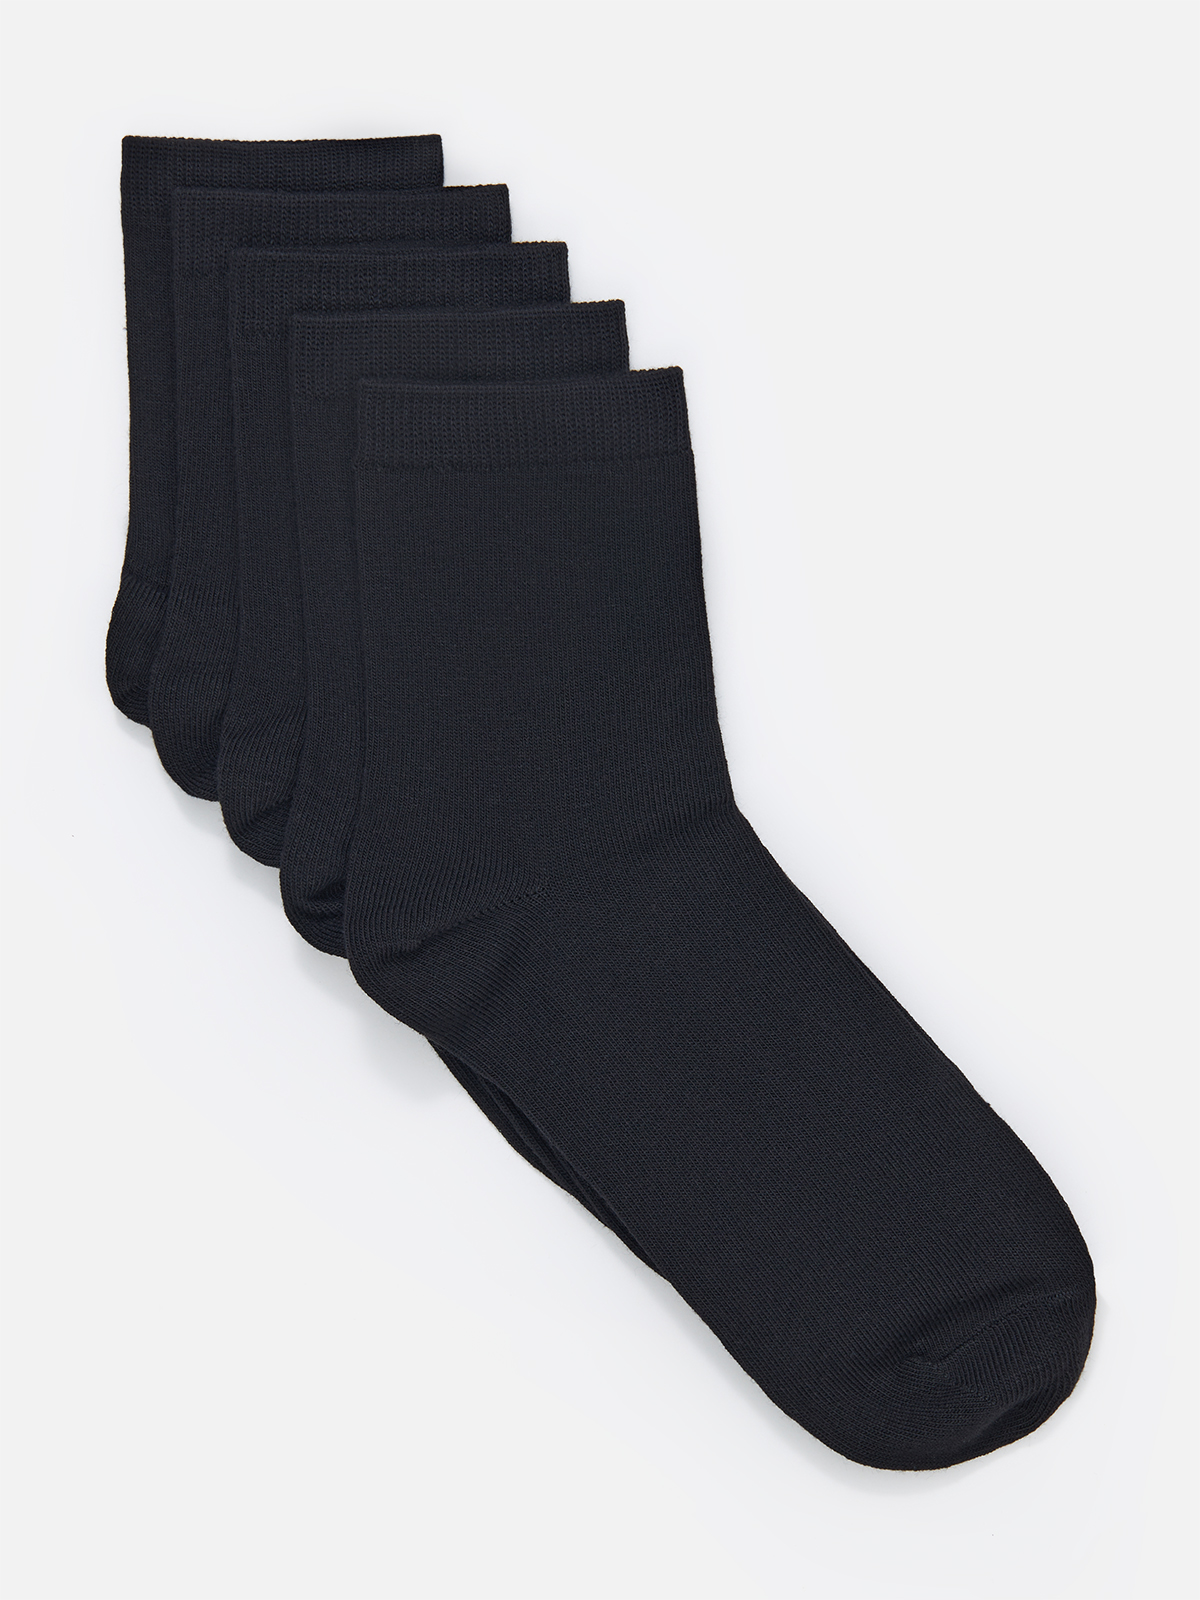 Комплект носков женских Cotton & Quality 5466Т5 черных 39-41